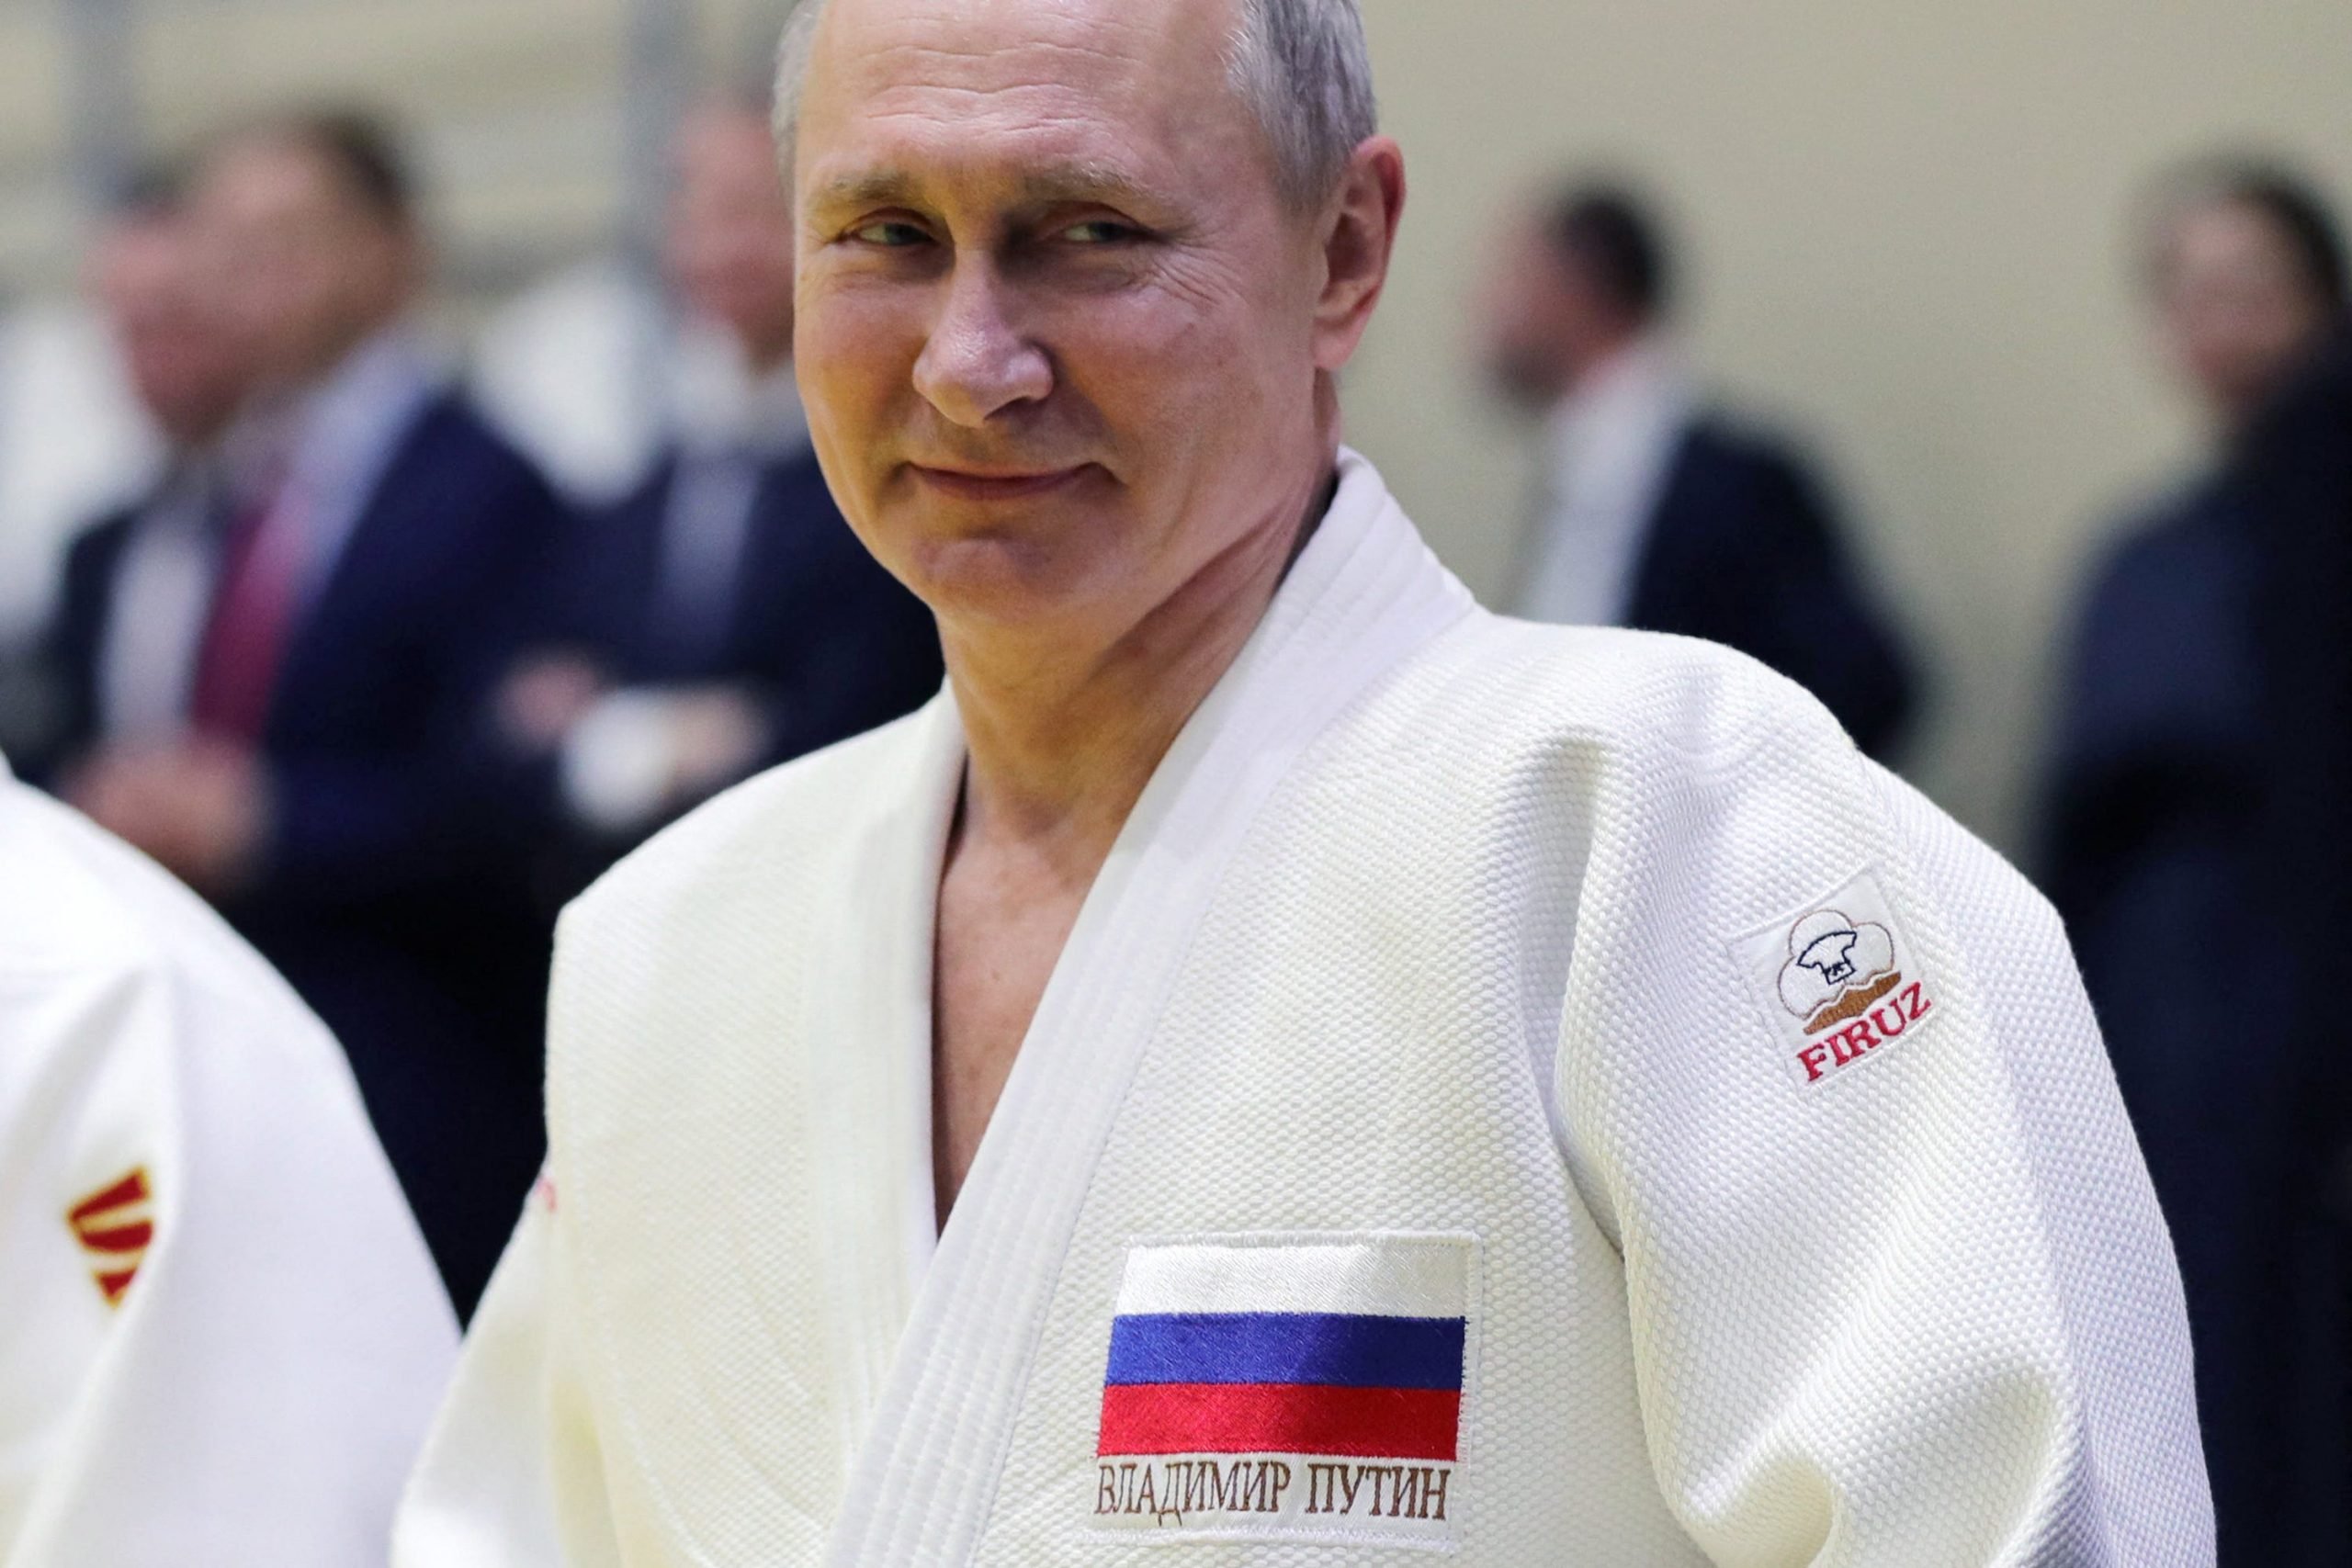 Putin in 2019